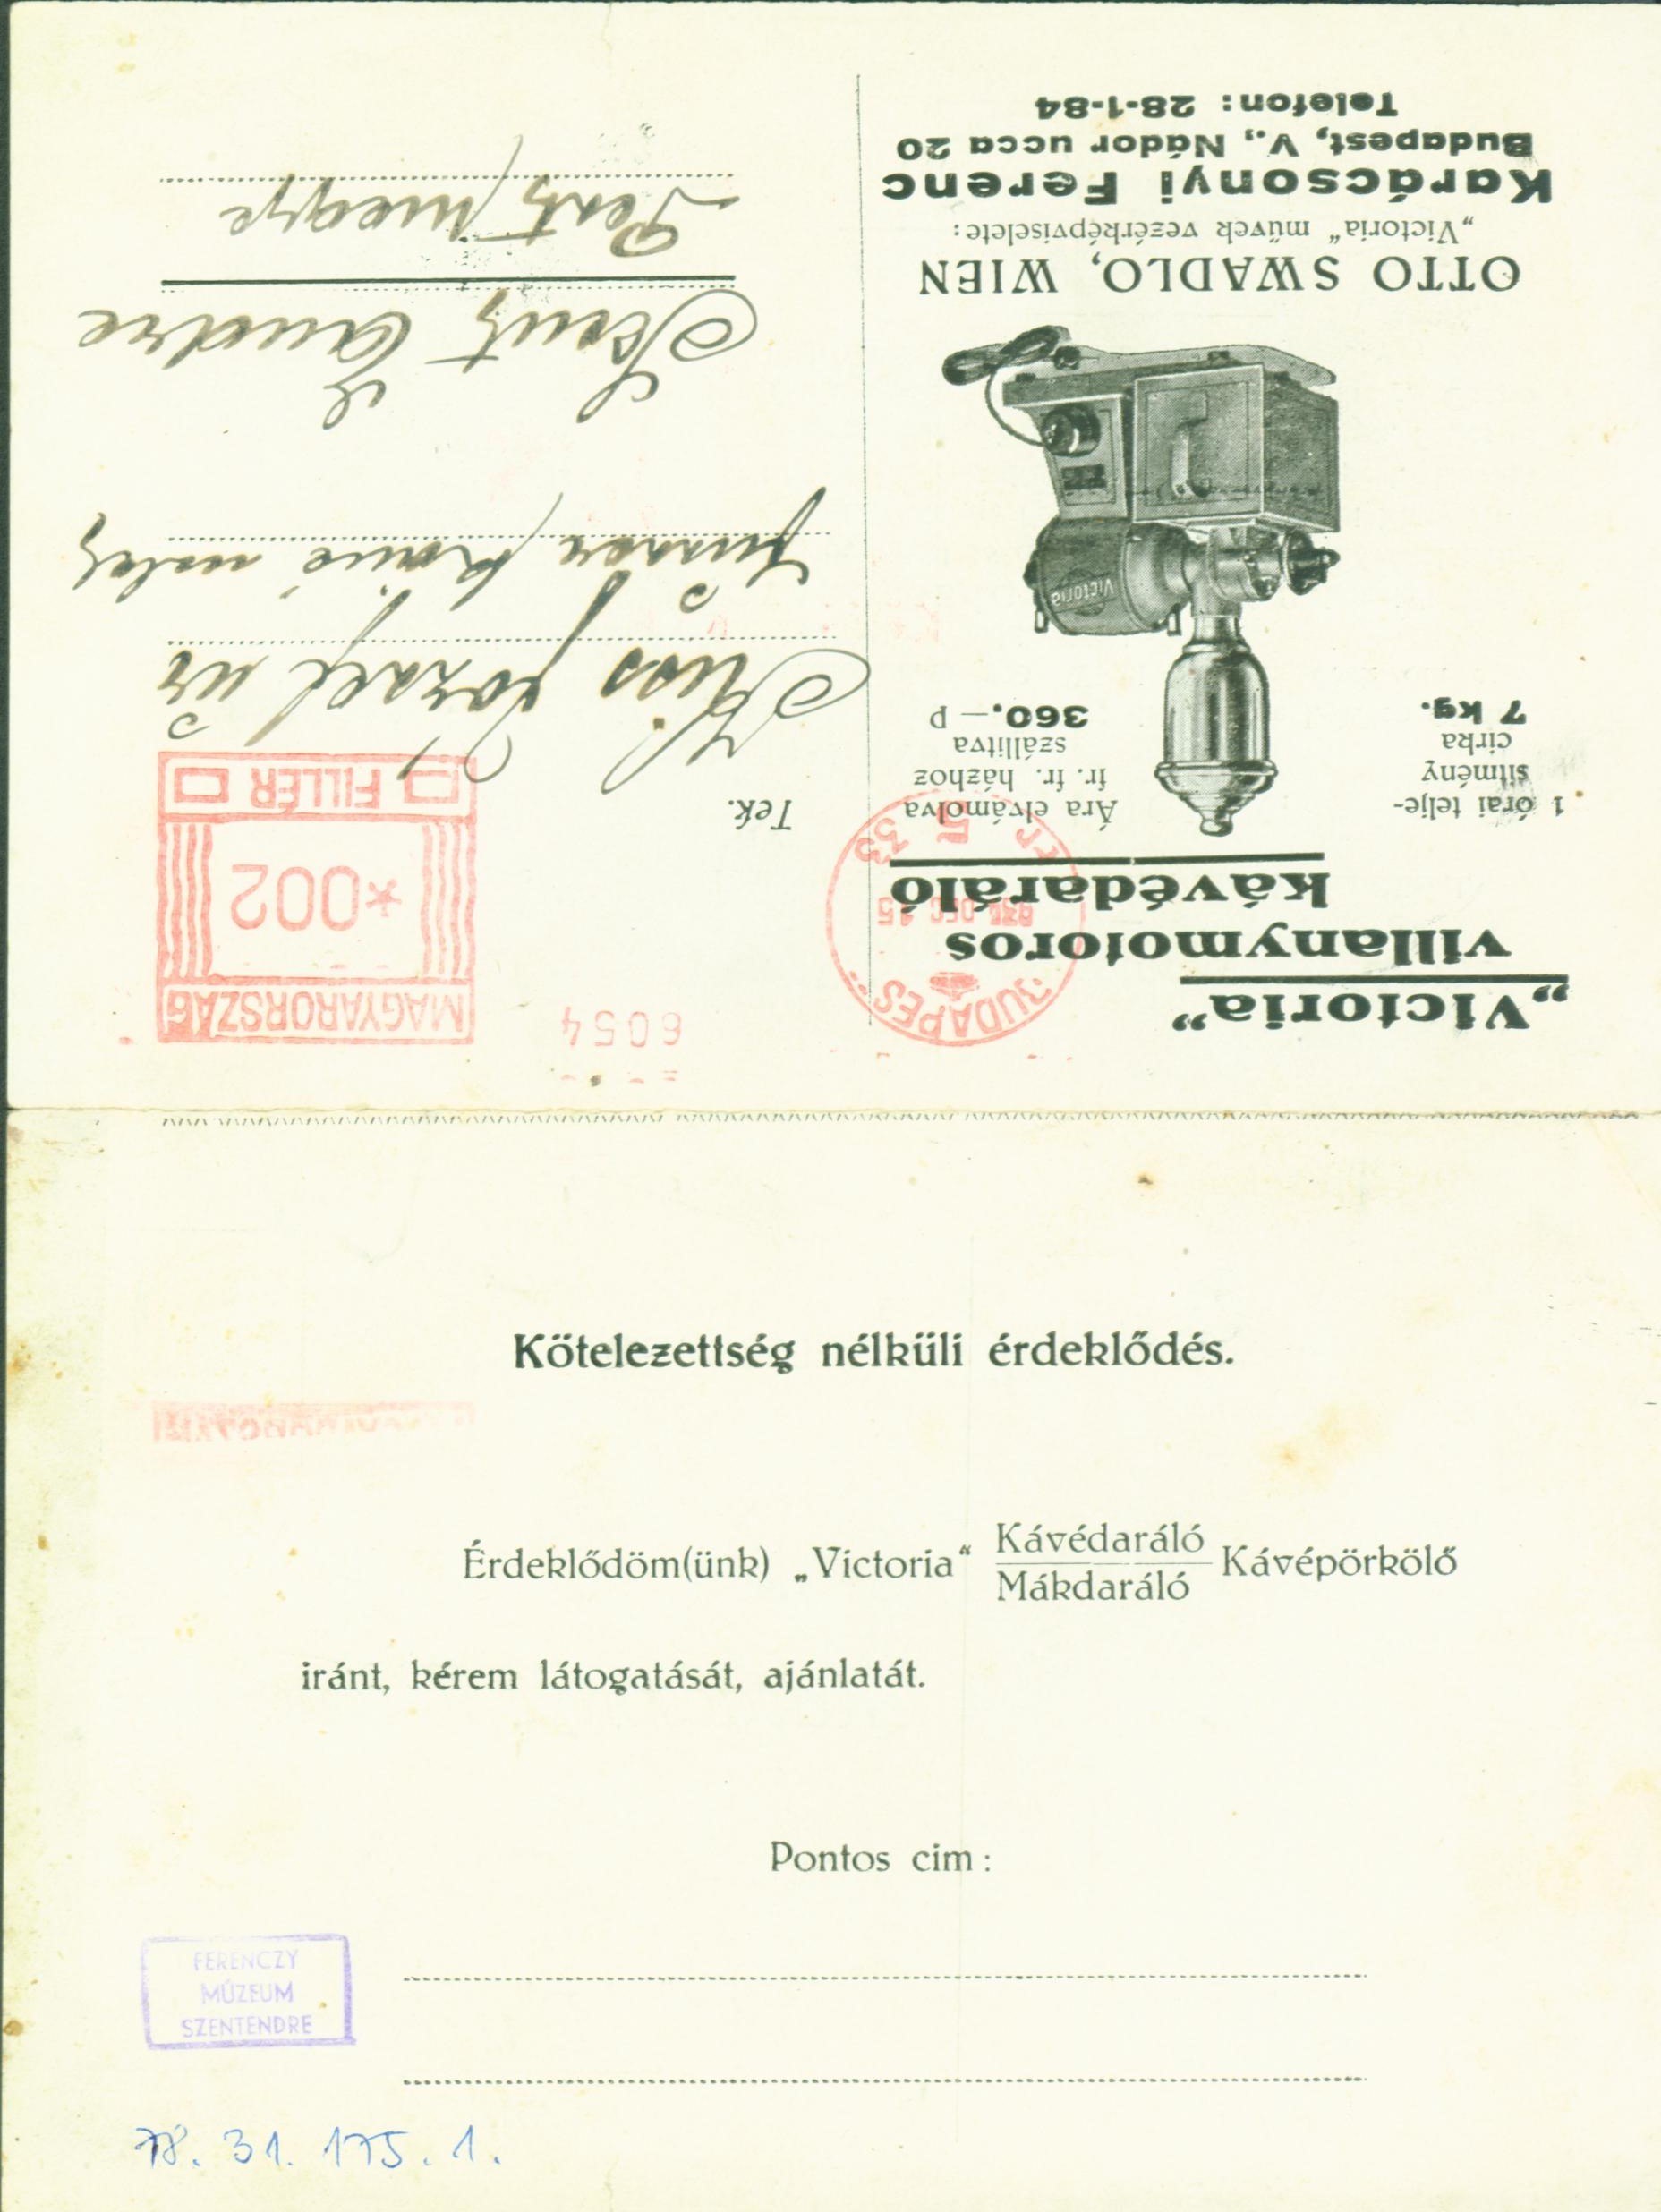 Levelezőlap a Victoria villanymotoros kávédarálóról (1934) (Ferenczy Múzeumi Centrum CC BY-NC-SA)